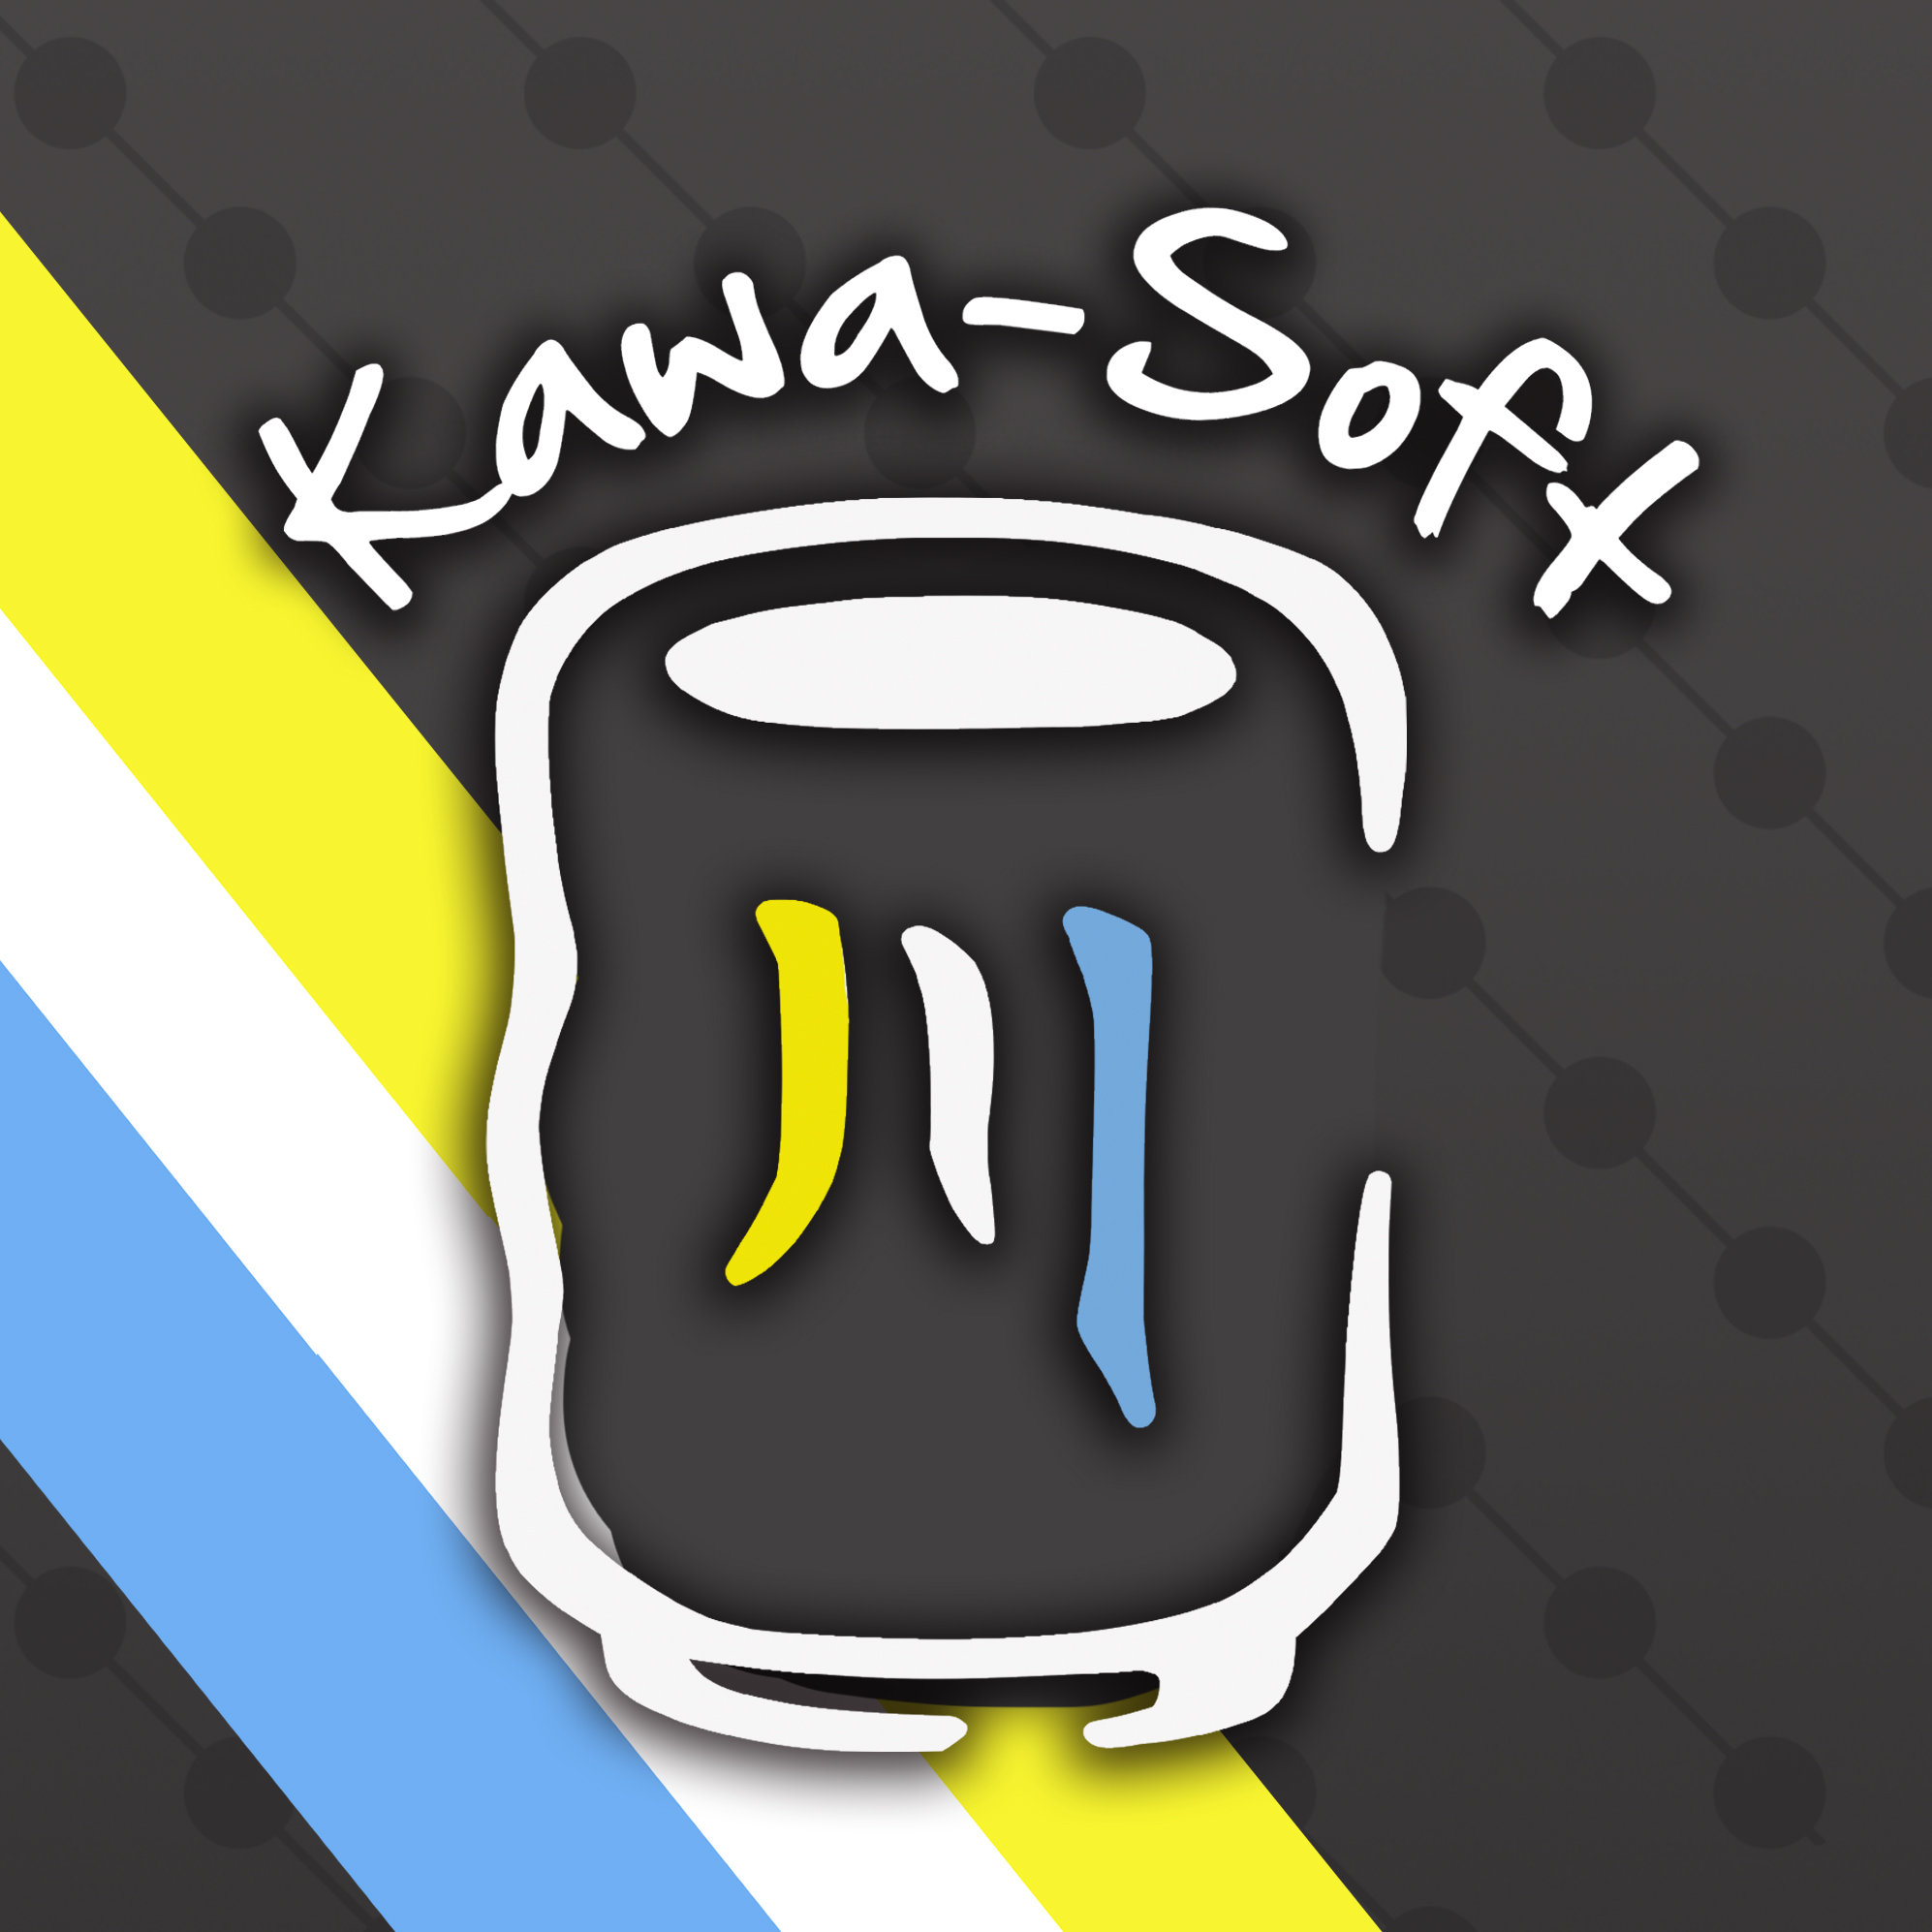 Kawa-Soft logo